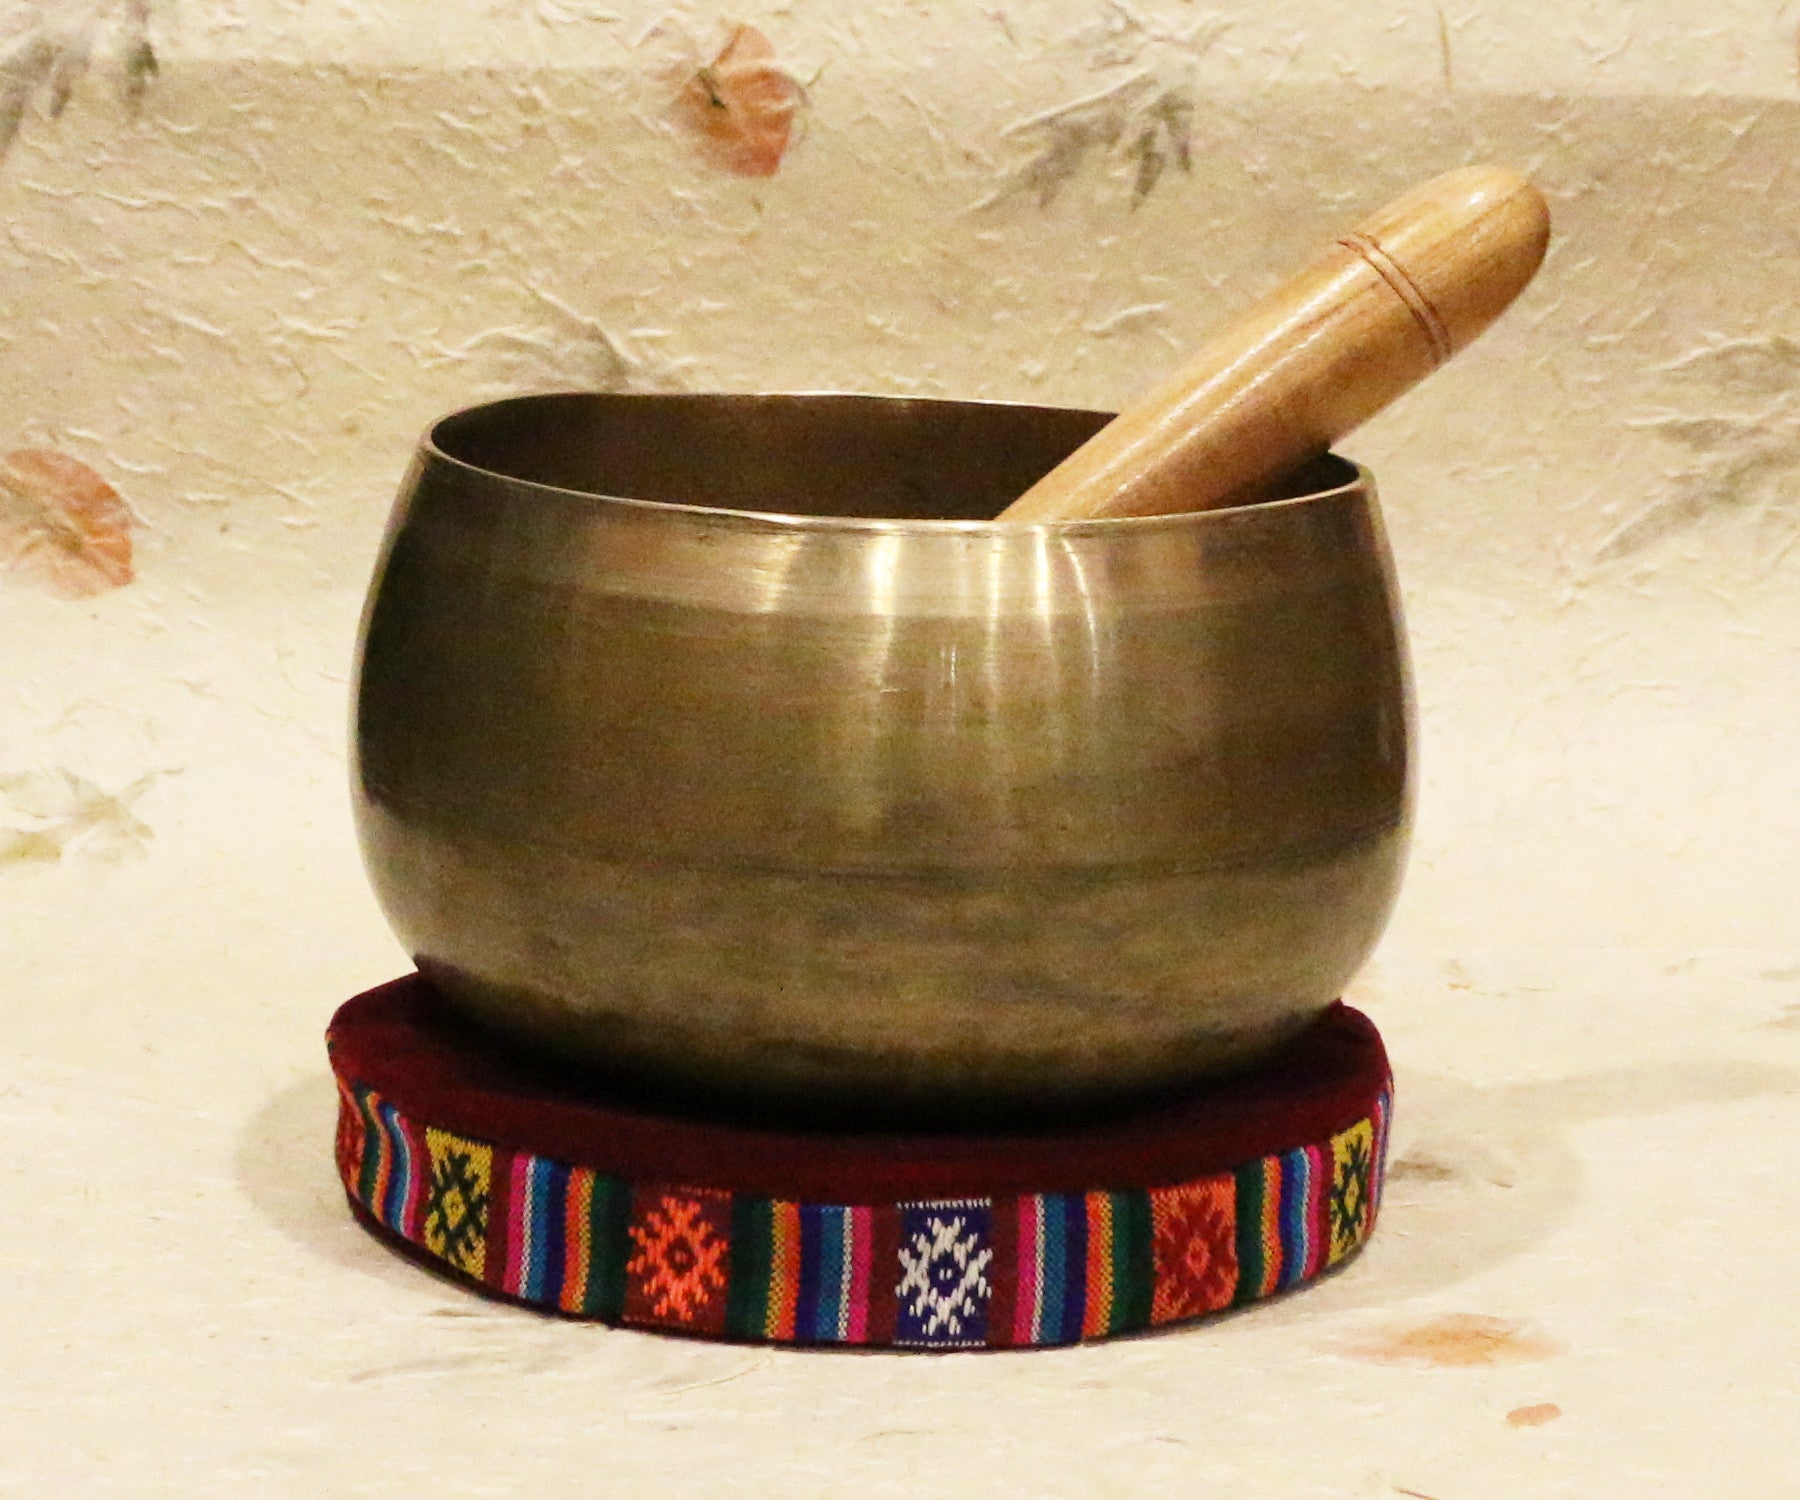 Old Singing Bowl - Tibet Arts & Healing